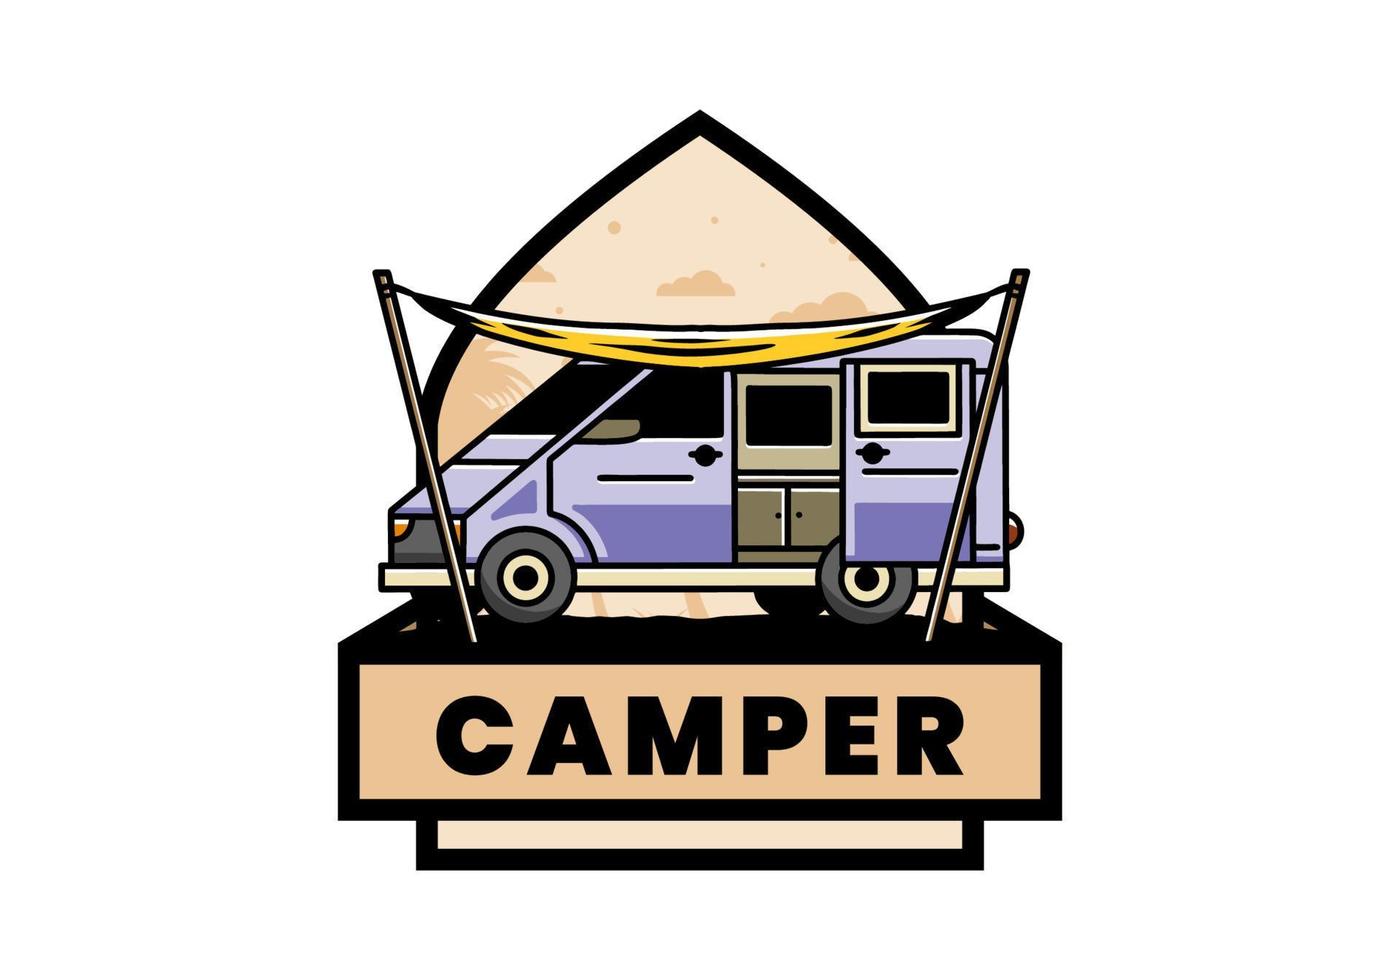 conception d'illustration de van camper et flysheet vecteur